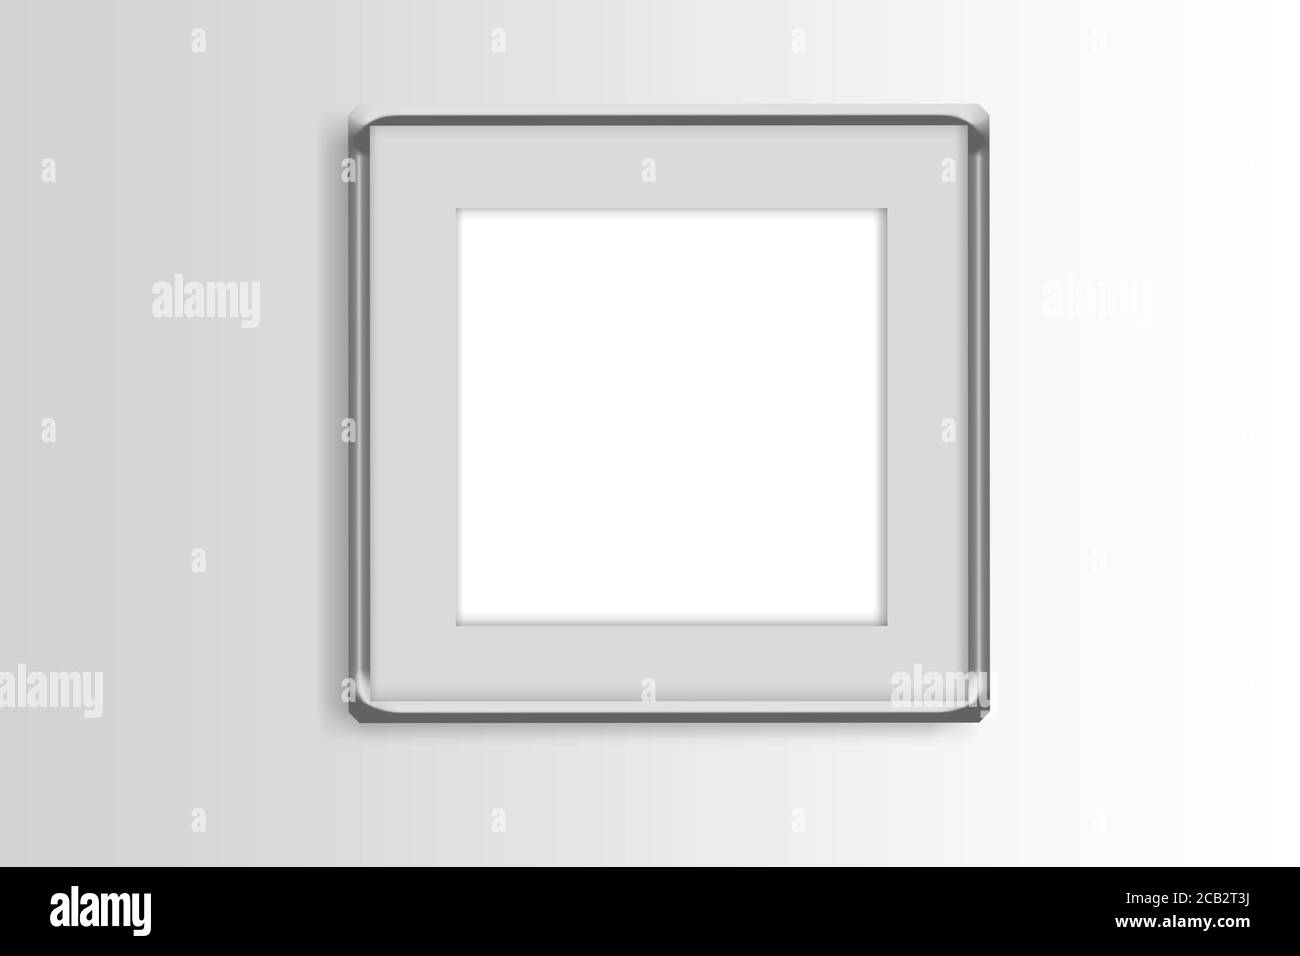 cadre carré simple sur fond blanc dégradé, présentation 3d avec bordures métalliques, cadre intérieur blanc Banque D'Images